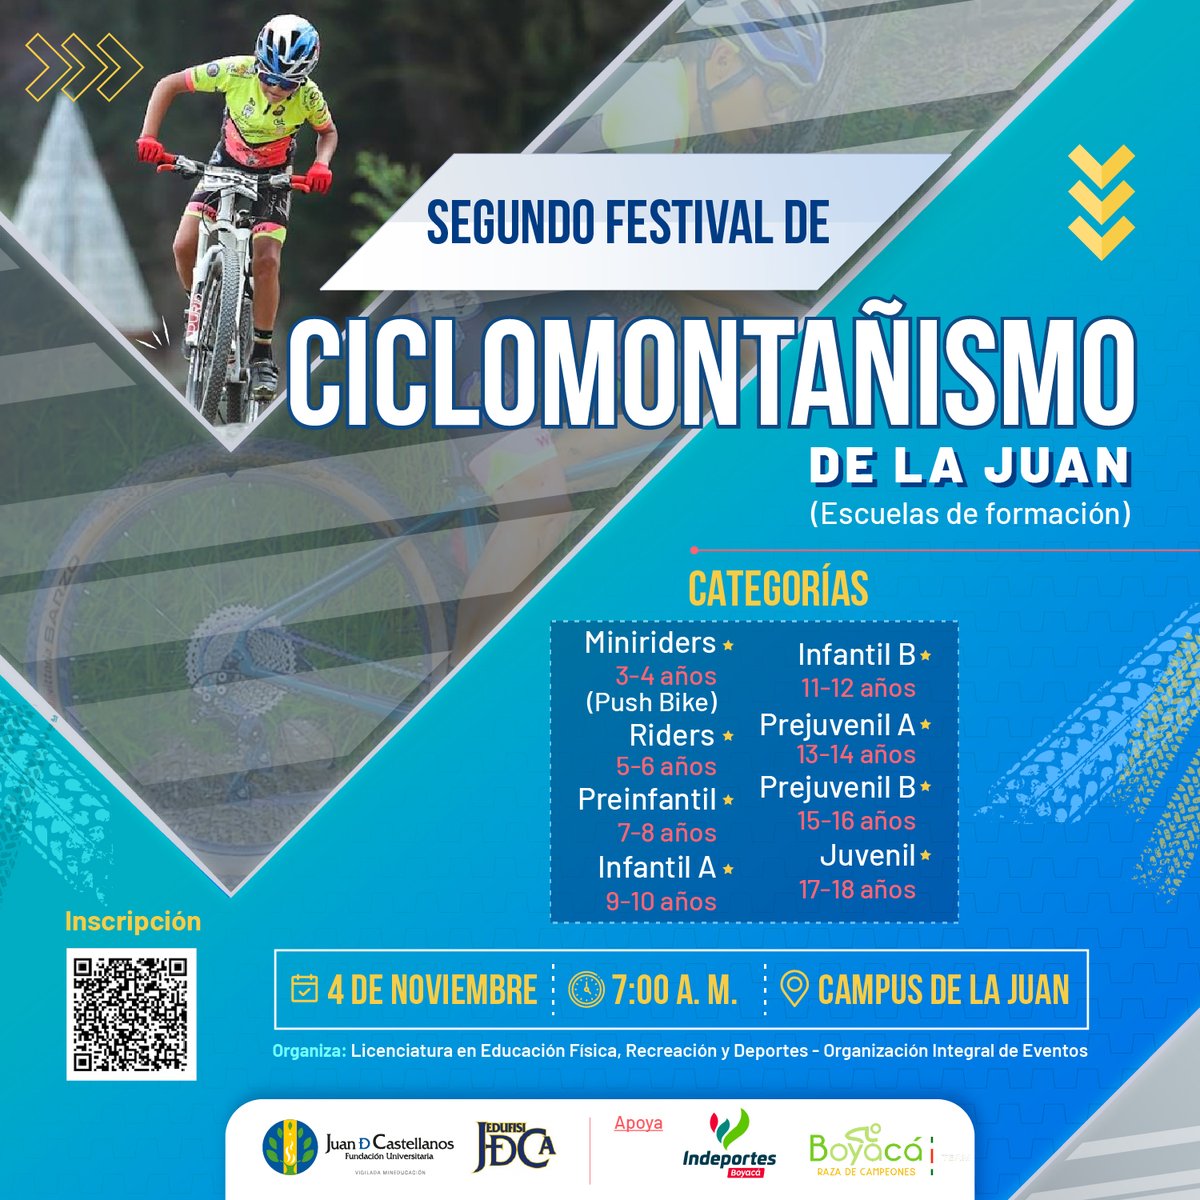 Habilidad, destreza, resistencia y técnica⚡️, son las cualidades que definen a los amantes del ciclismo de montaña 🚵‍♀️.

¡Te invitamos a participar en nuestro 2º Festival de Ciclomontañismo! 💚💛💙

¡Inscríbete!📝

#LaJuanEsMás #Ciclomontañismo #MeGustaLaJuan #Ciclismo #Edufisica